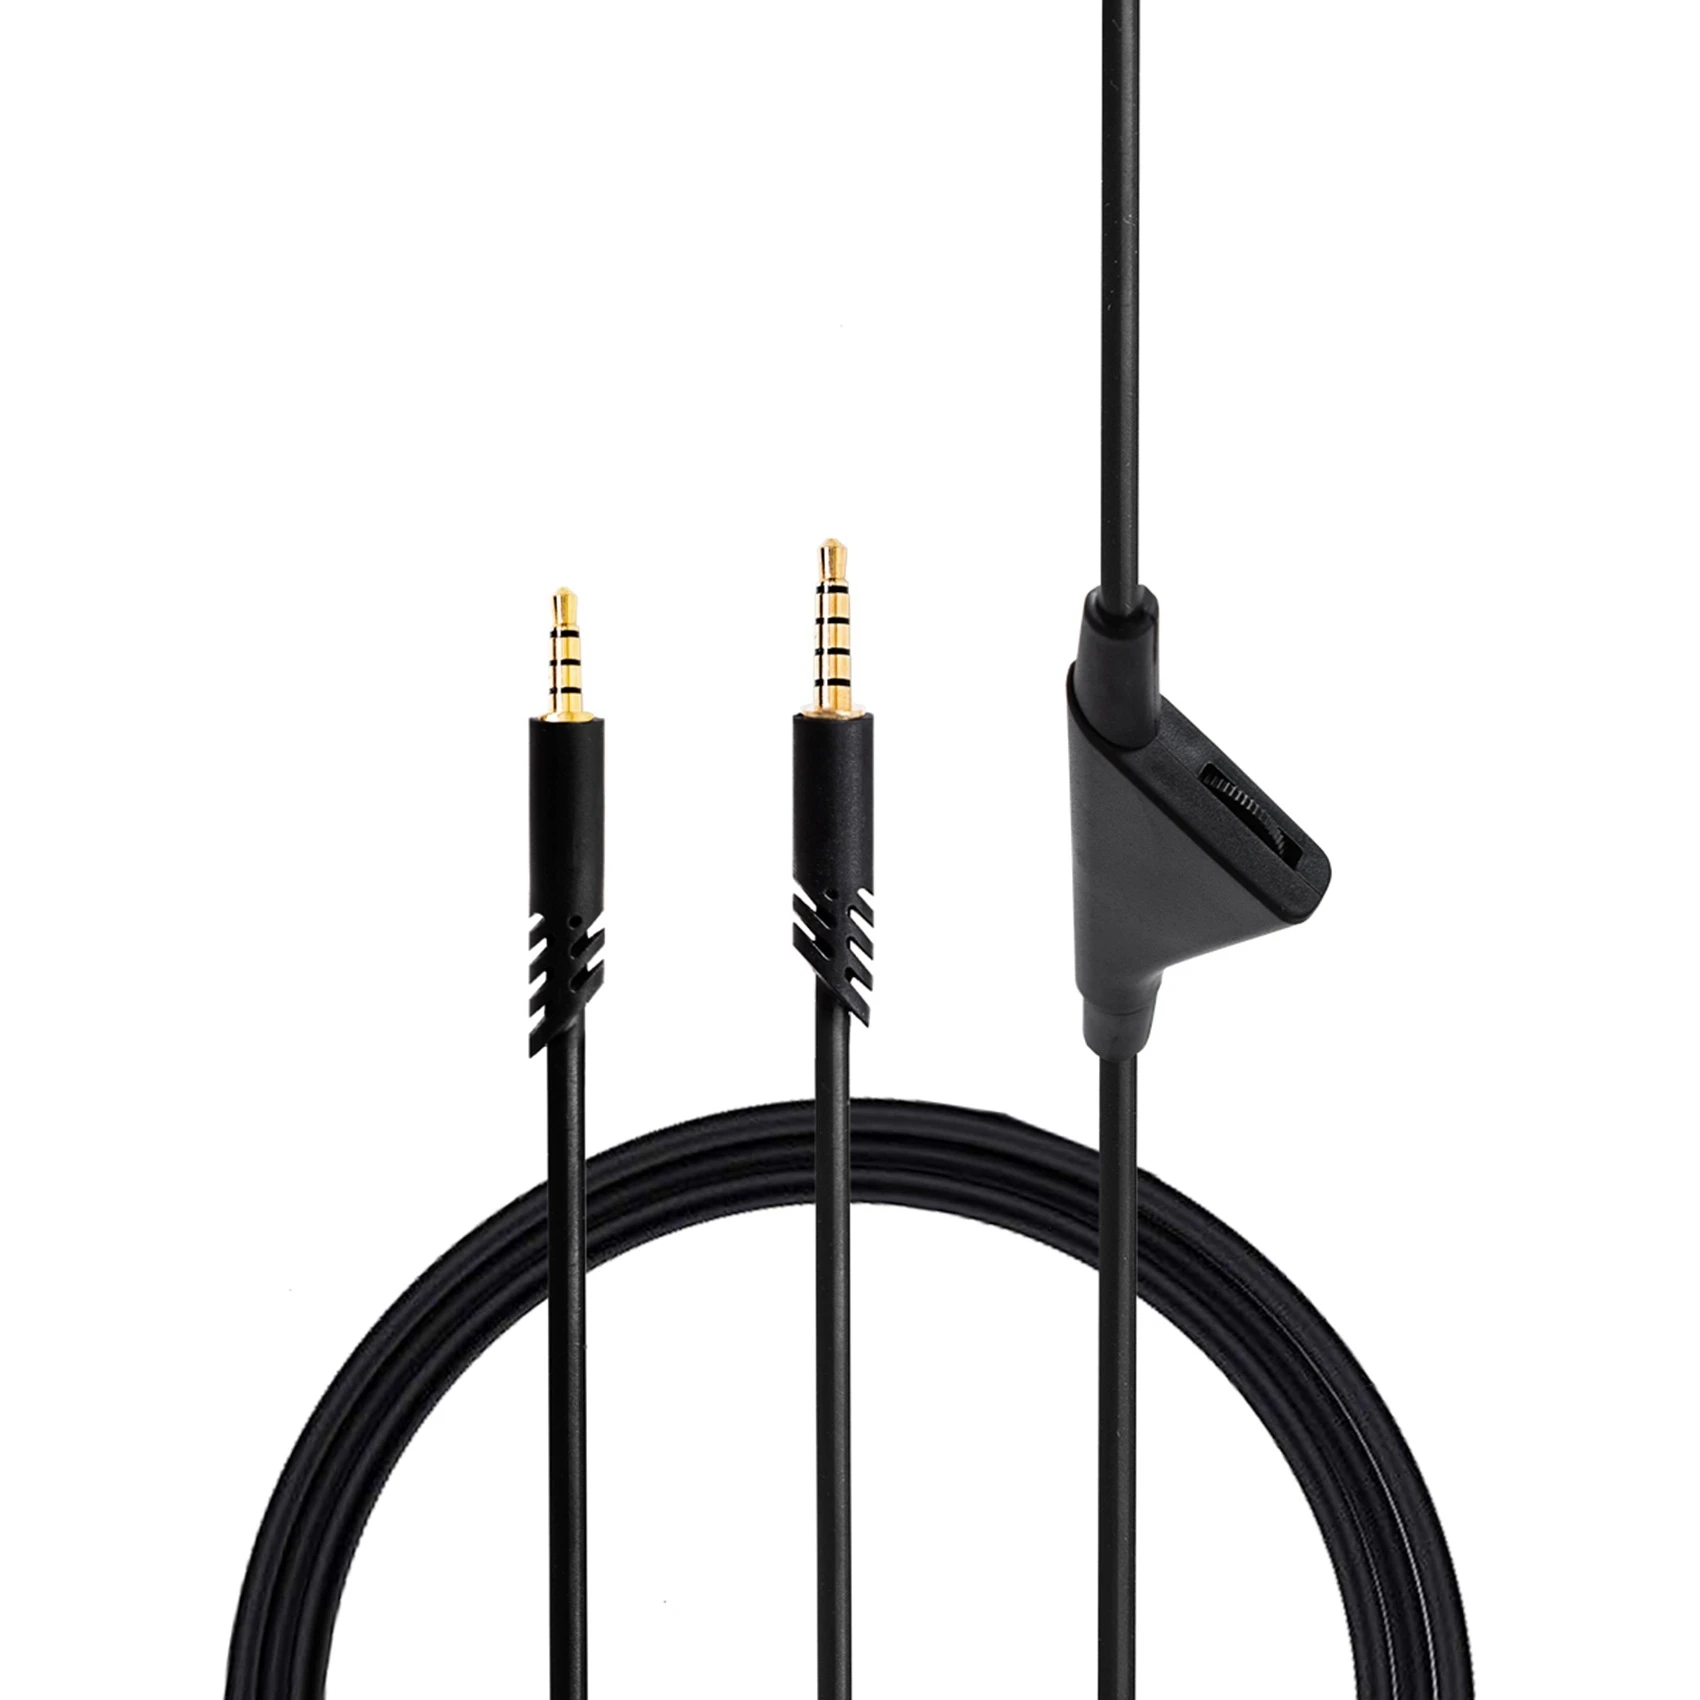 

Сменный кабель для гарнитуры Astro A10 A40/A40TR, кабель игровой гарнитуры с функцией регулировки громкости, 2,0 м